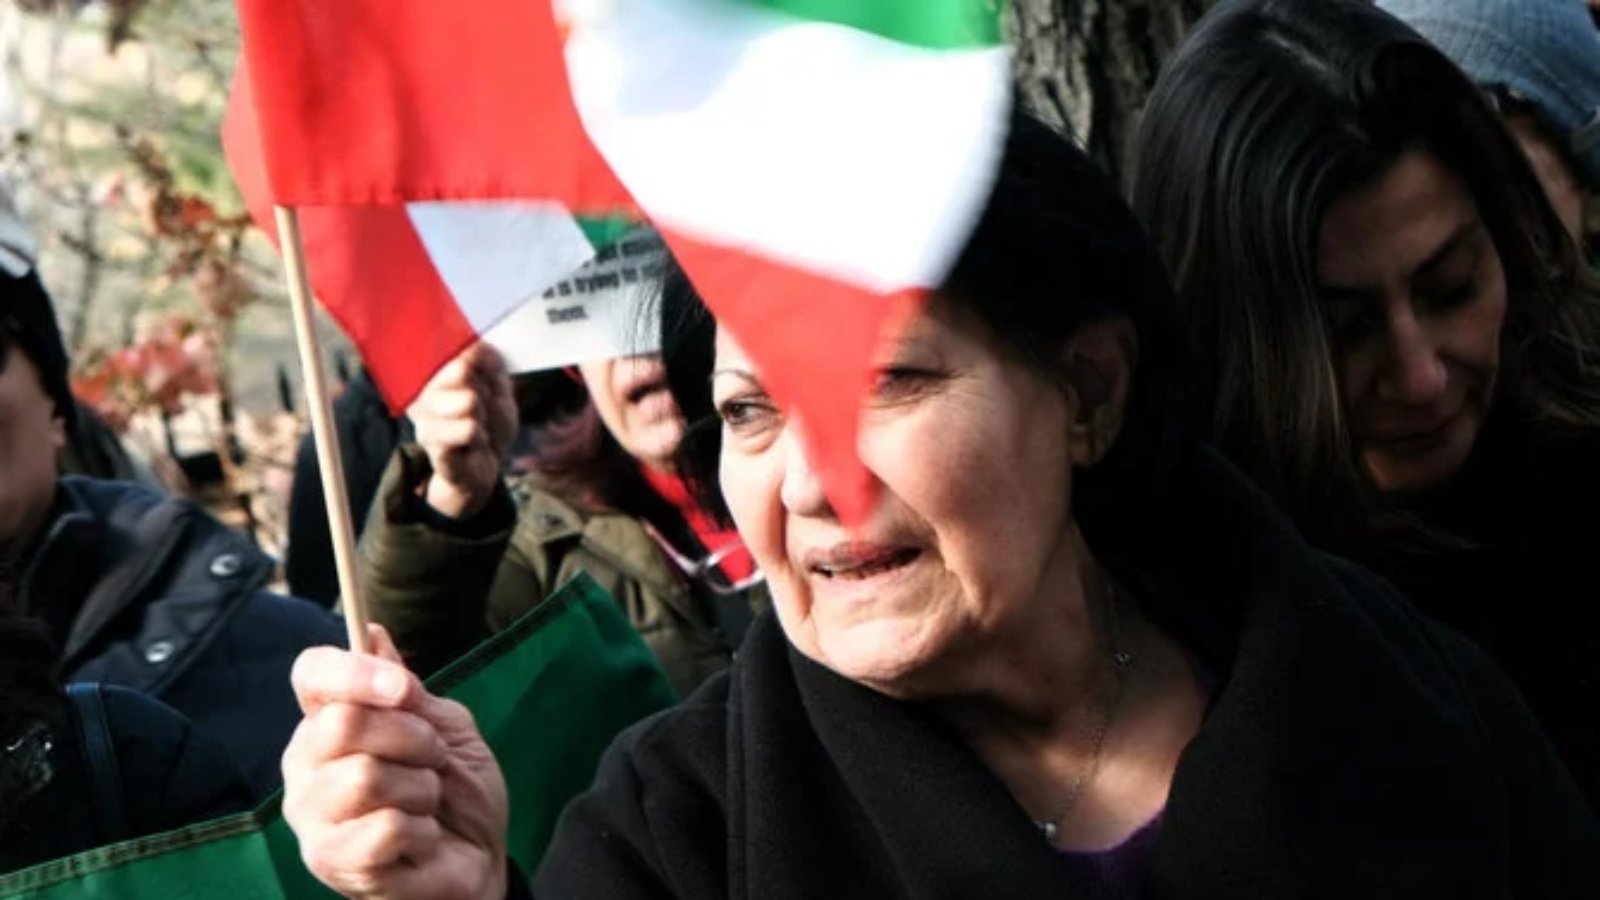 امرأة تنضم إلى المتظاهرين أثناء تجمعهم خارج مقر إقامة دبلوماسي إيراني للتنديد بالحكومة الإيرانية وإعدام أحد المتظاهرين مؤخرًا في 10 ديسمبر 2022 في مدينة نيويورك.